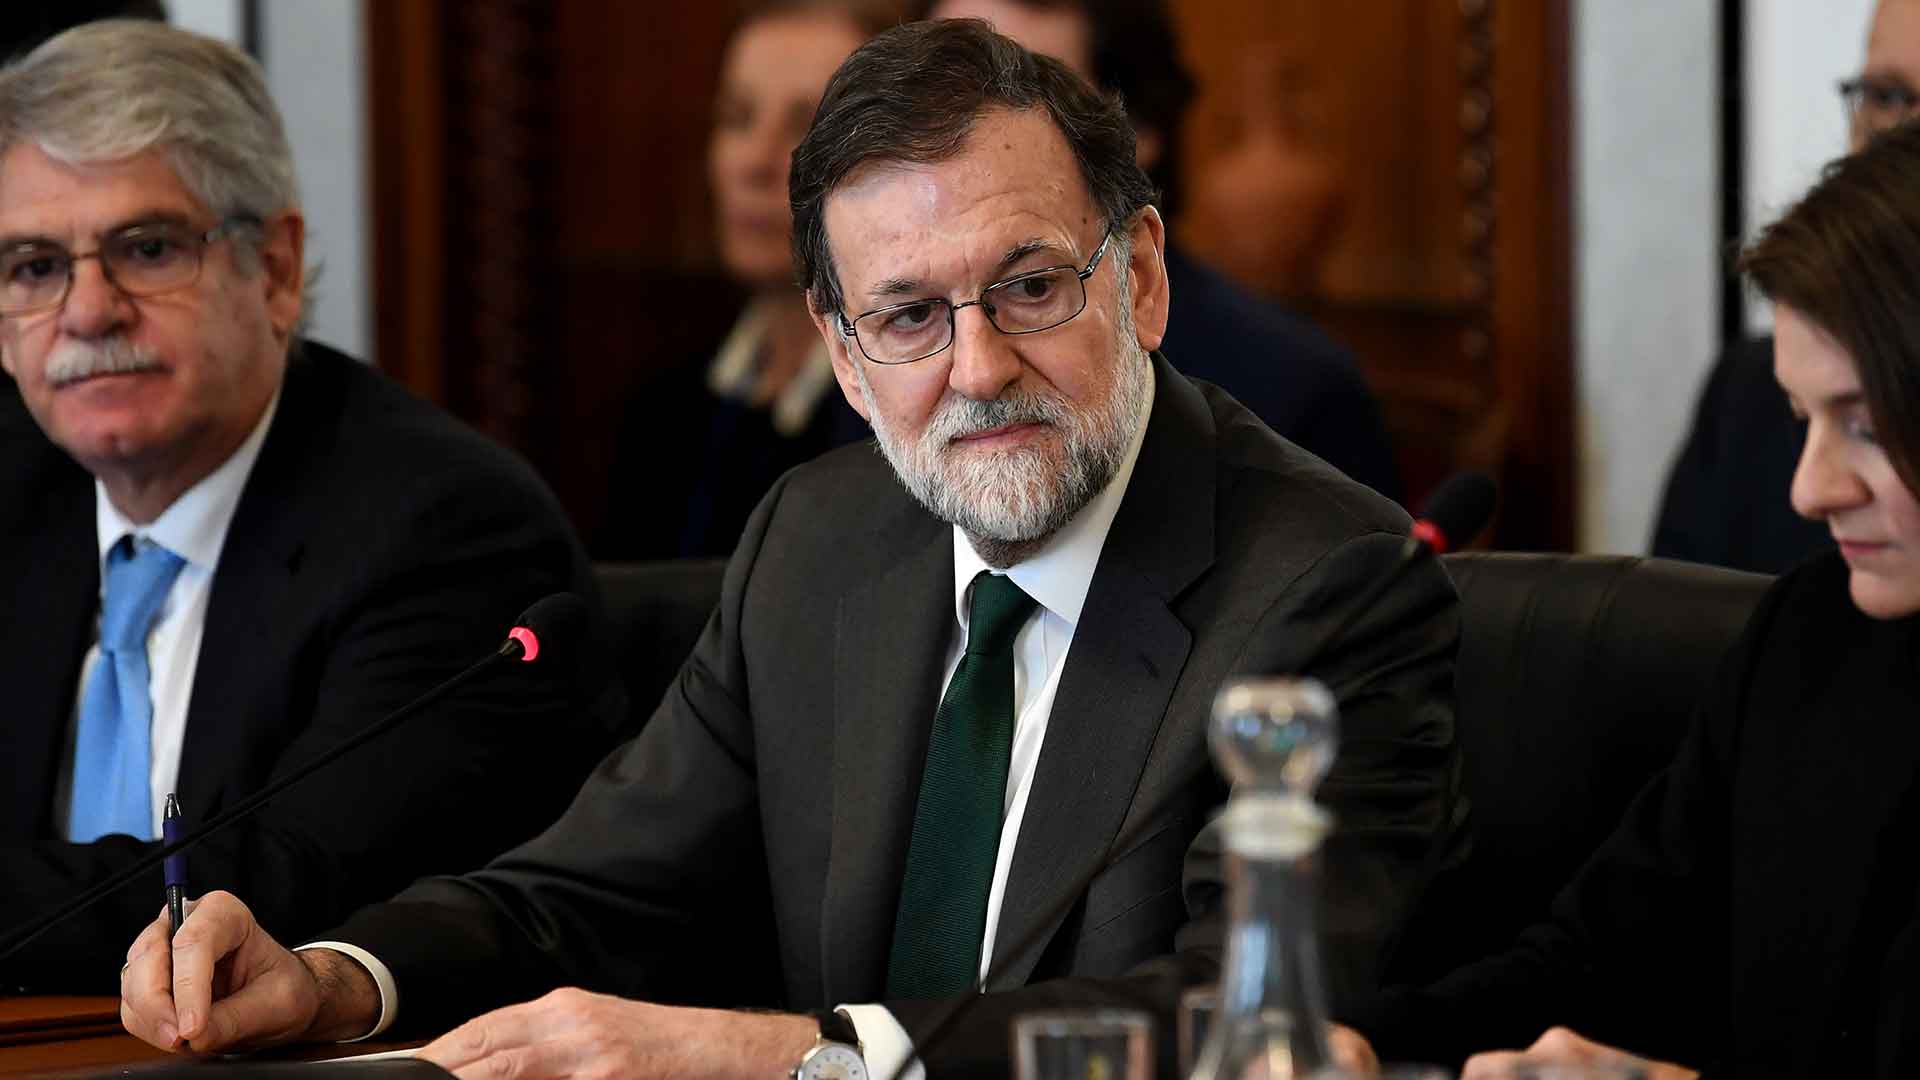 La remodelación del Gobierno solo afectará a De Guindos, asegura Rajoy